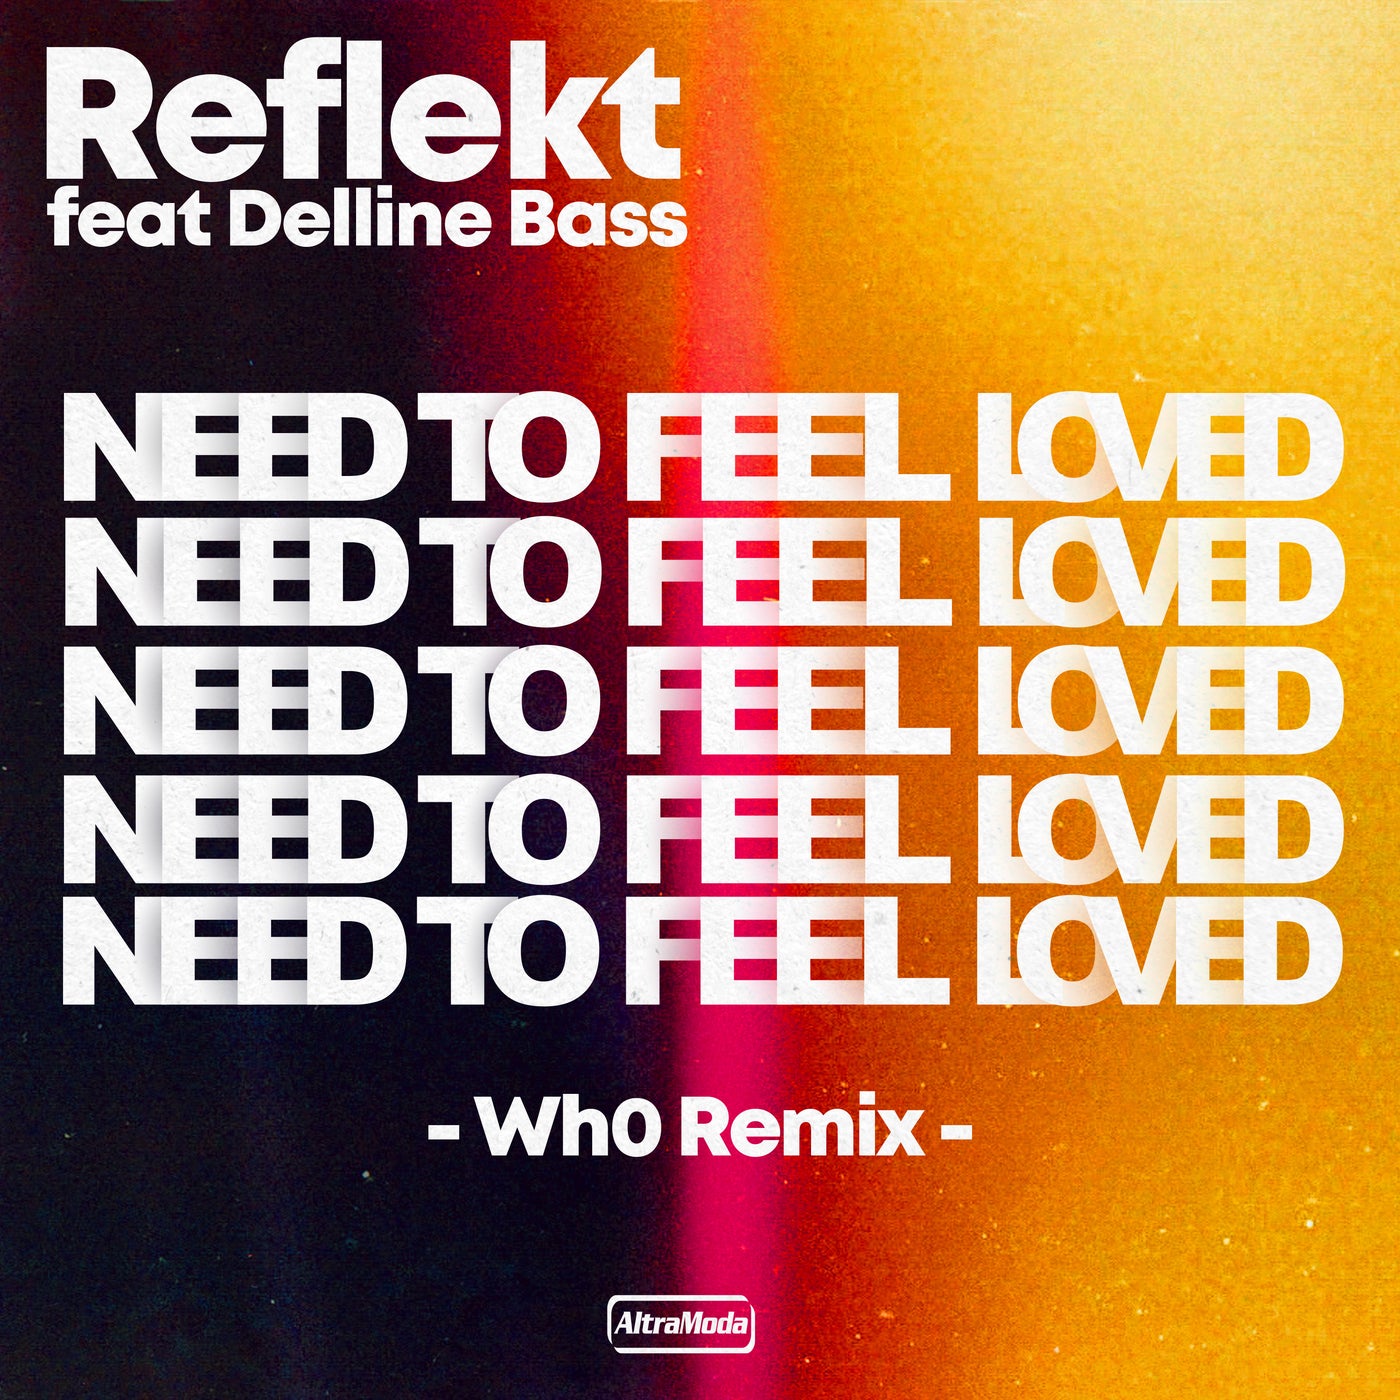 Delline bass need to feel loved. Reflekt featuring Delline Bass - need to feel Love. Reflekt ft. Delline Bass. Reflekt need to feel Loved. Reflekt_featuring.